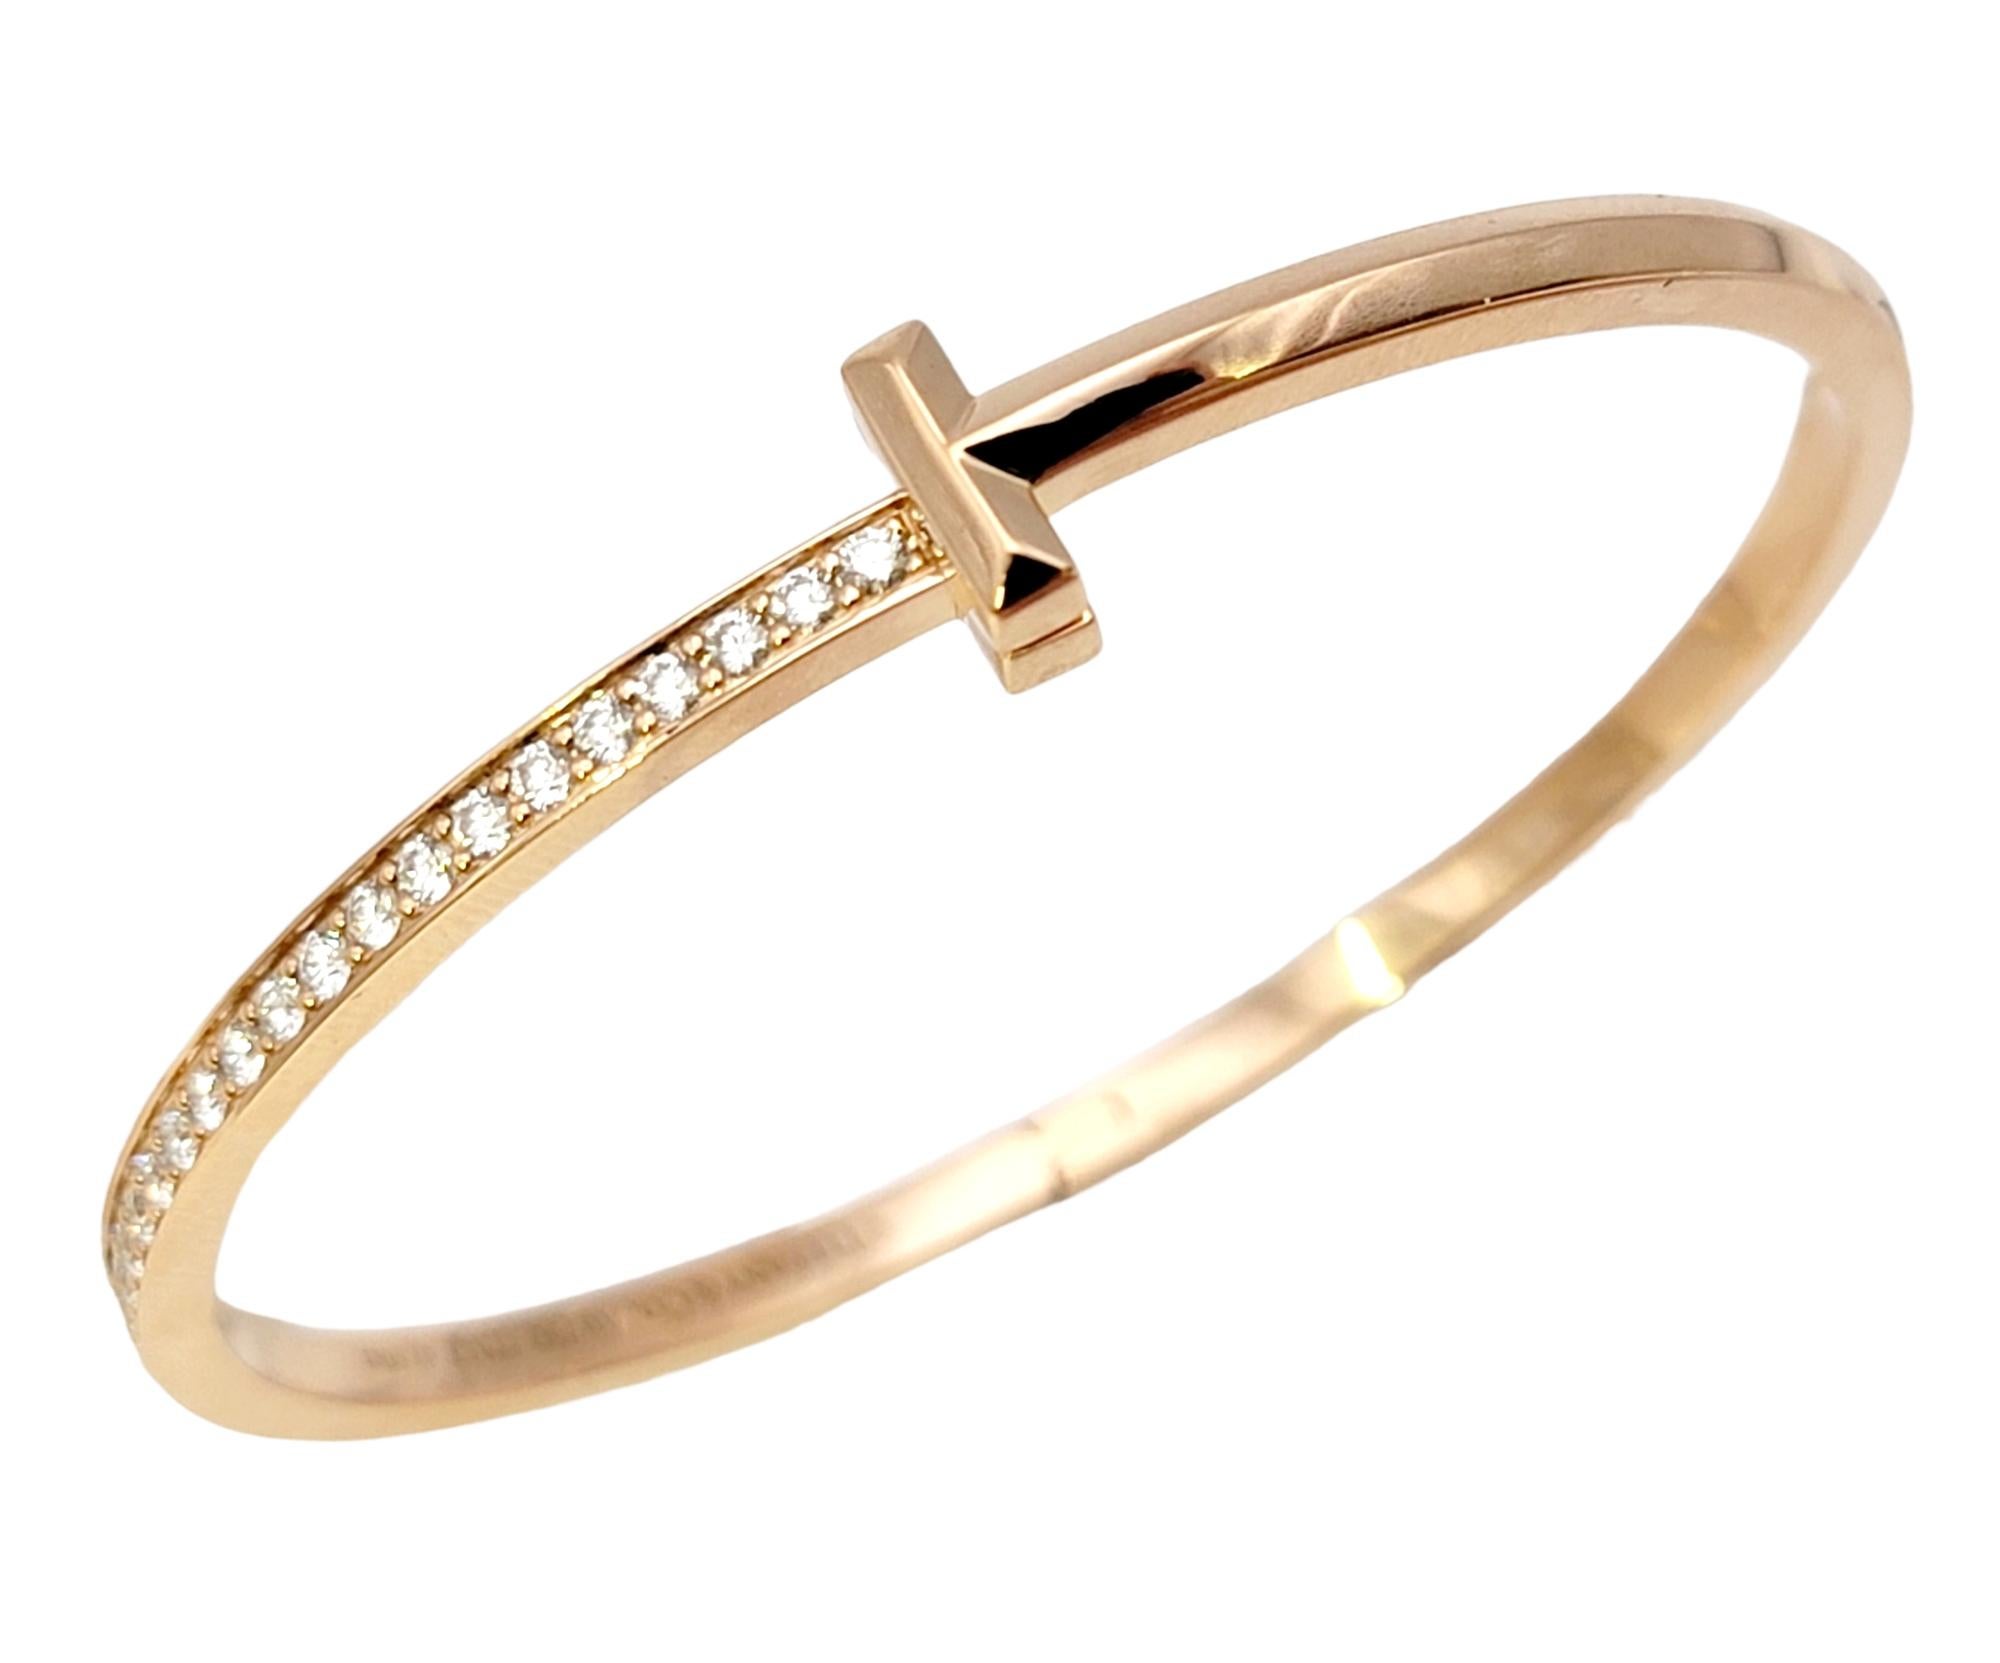 Superbe et sophistiqué bracelet-bracelet en diamants de Tiffany & Co. de l'élégante collection Tiffany T. Fabriquée avec une attention méticuleuse aux détails, cette pièce luxueuse exsude une beauté et une grandeur intemporelles.

Ce bracelet en or